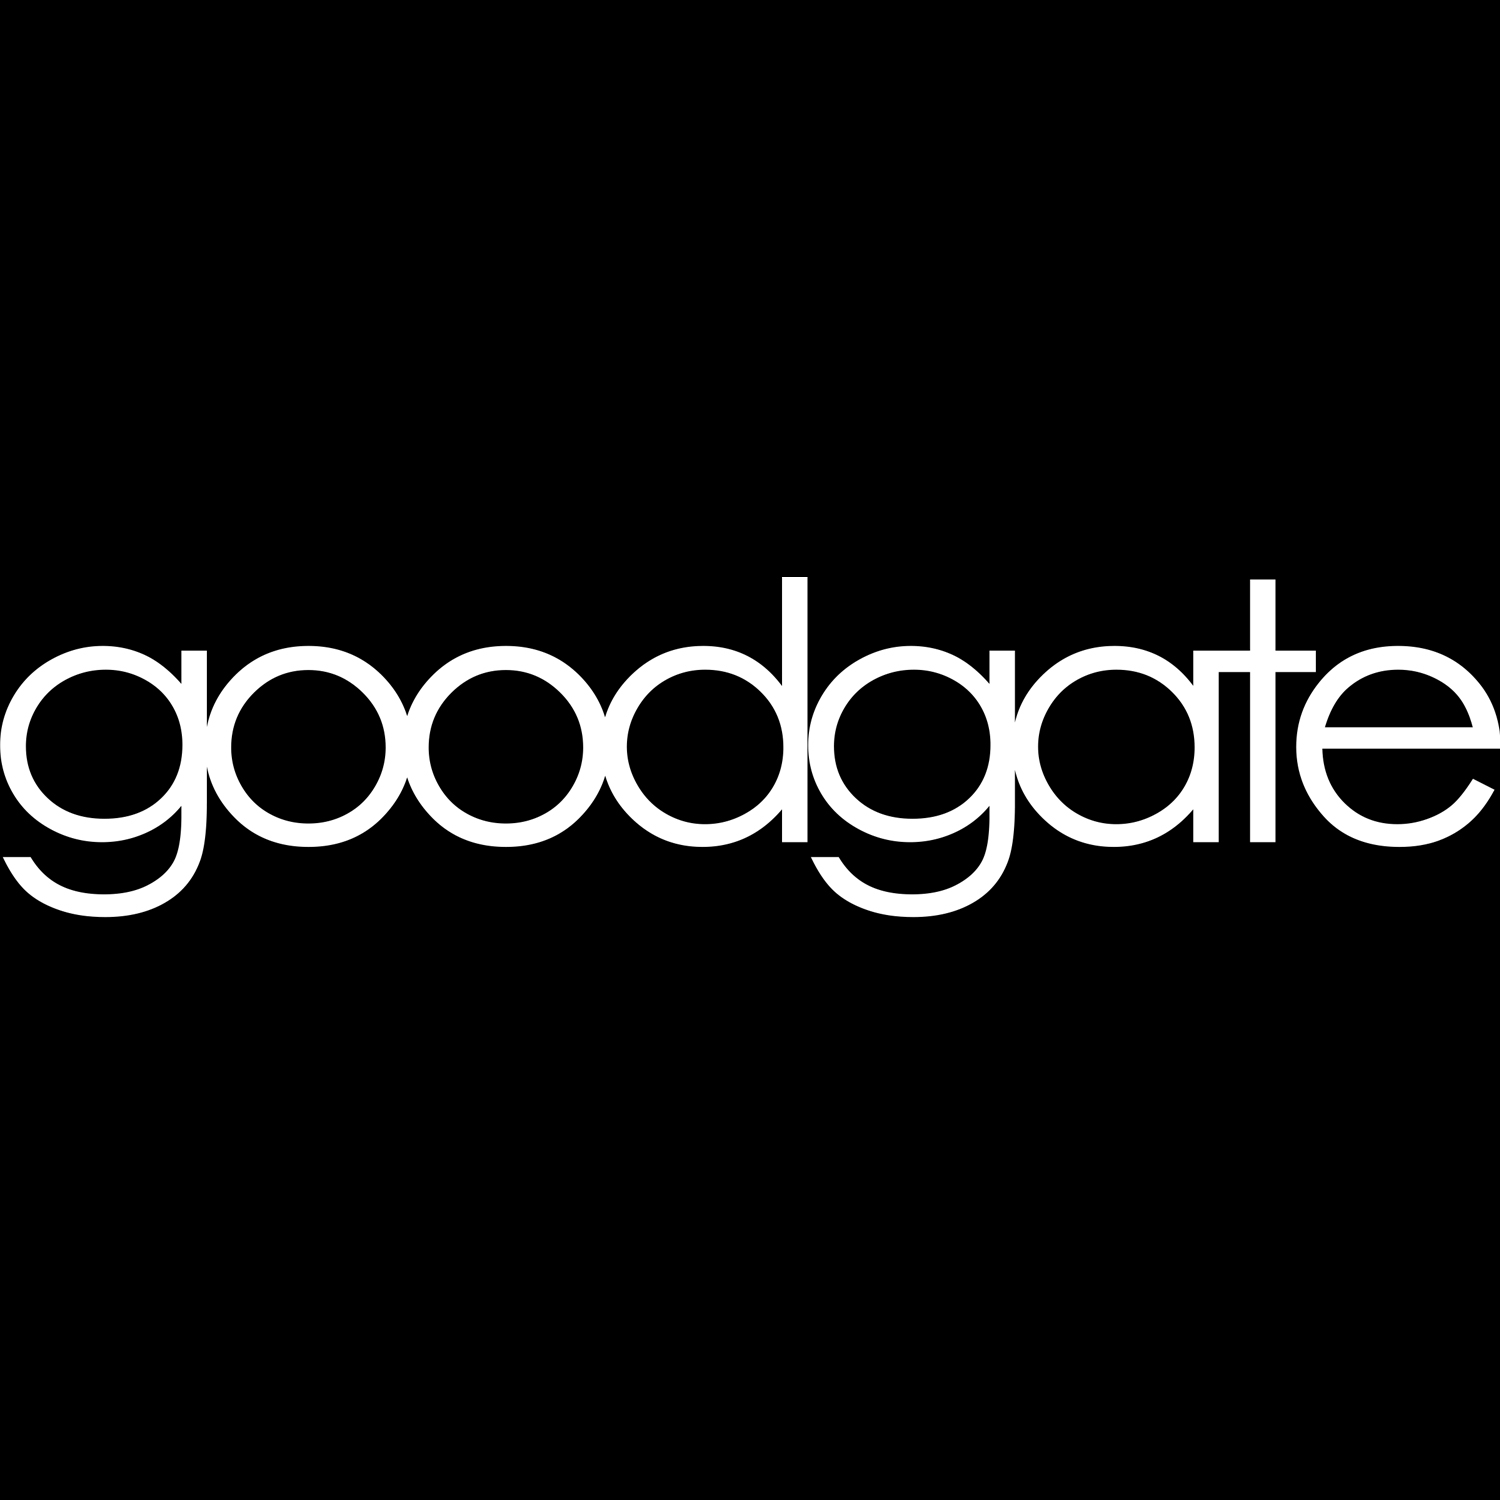 (c) Goodgate.tv